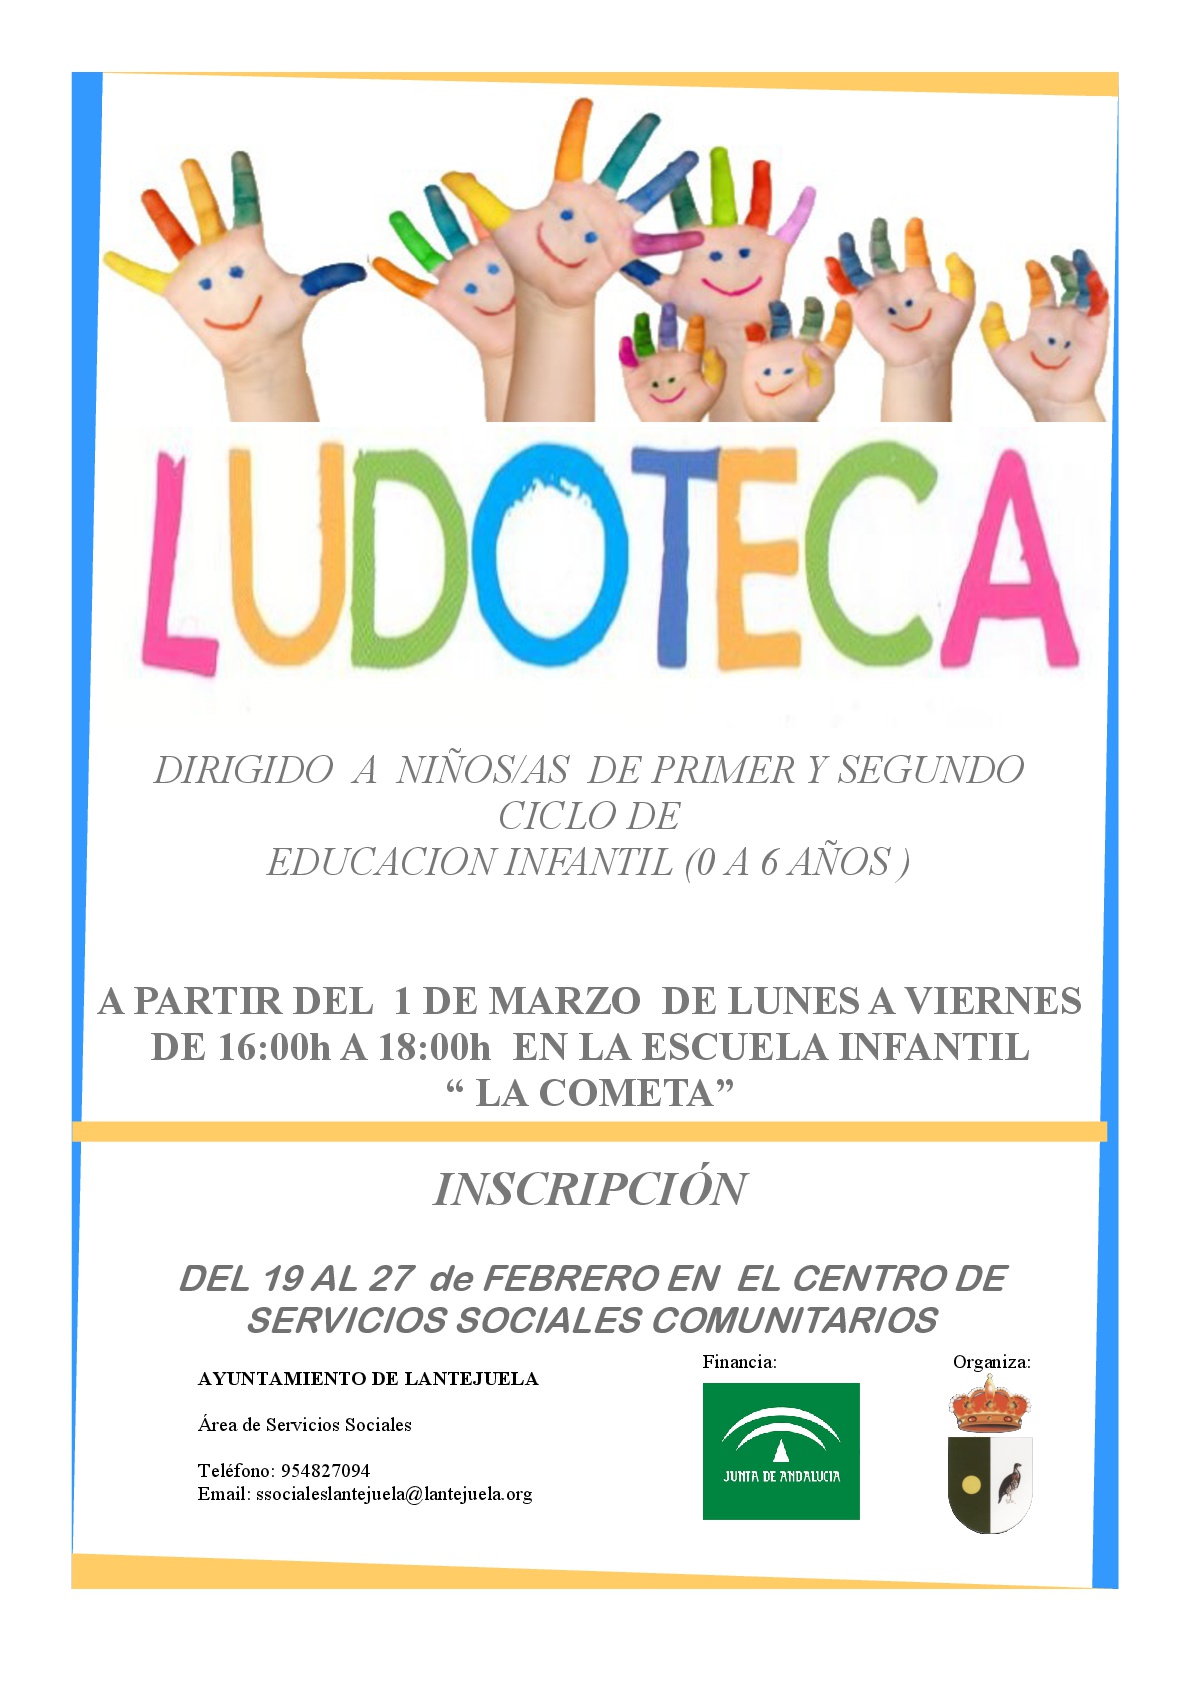 Ludoteca-001